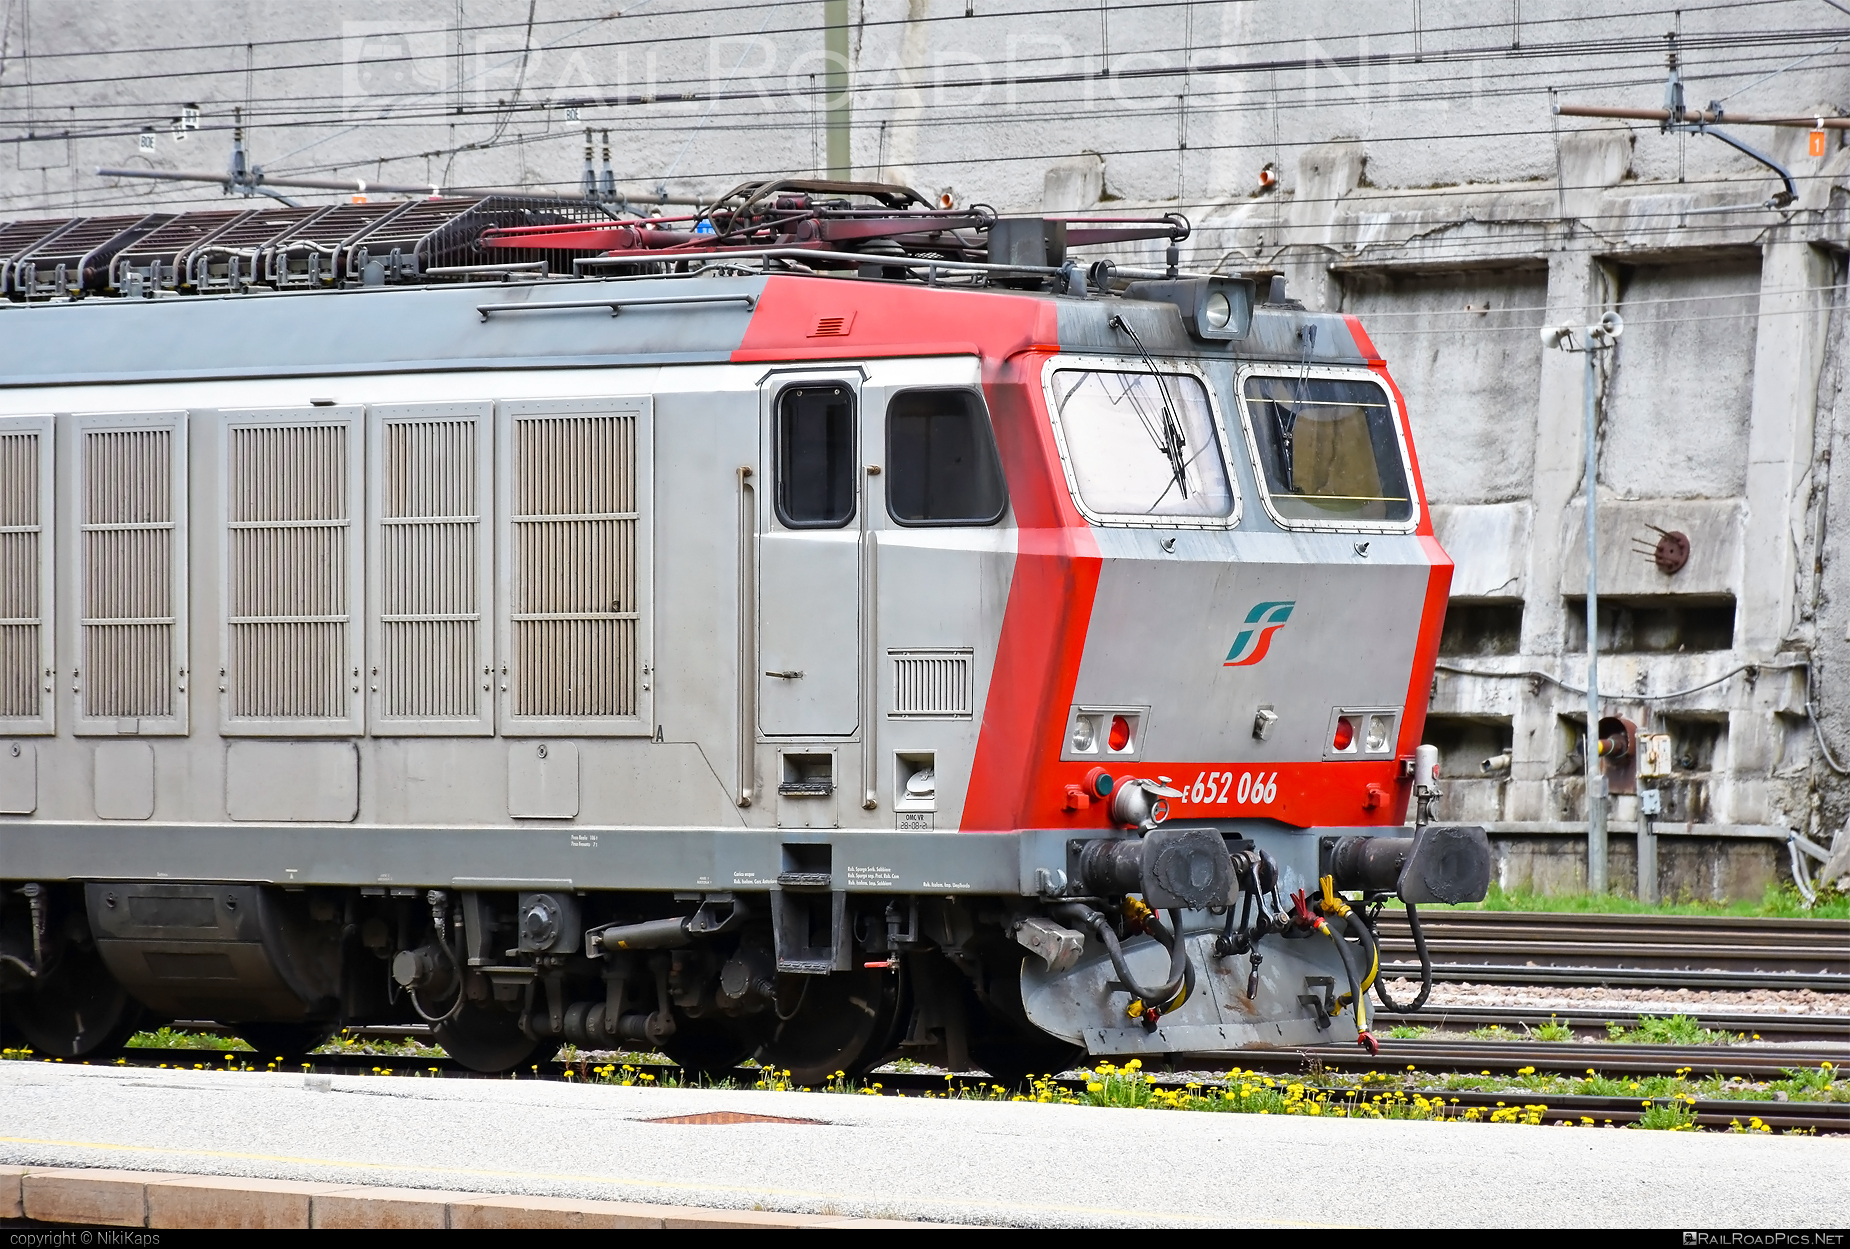 FS Class E.652 - E652 066 operated by Mercitalia Rail S.r.l. #e652 #ferroviedellostato #fs #fsClassE652 #fsitaliane #mercitalia #tigre